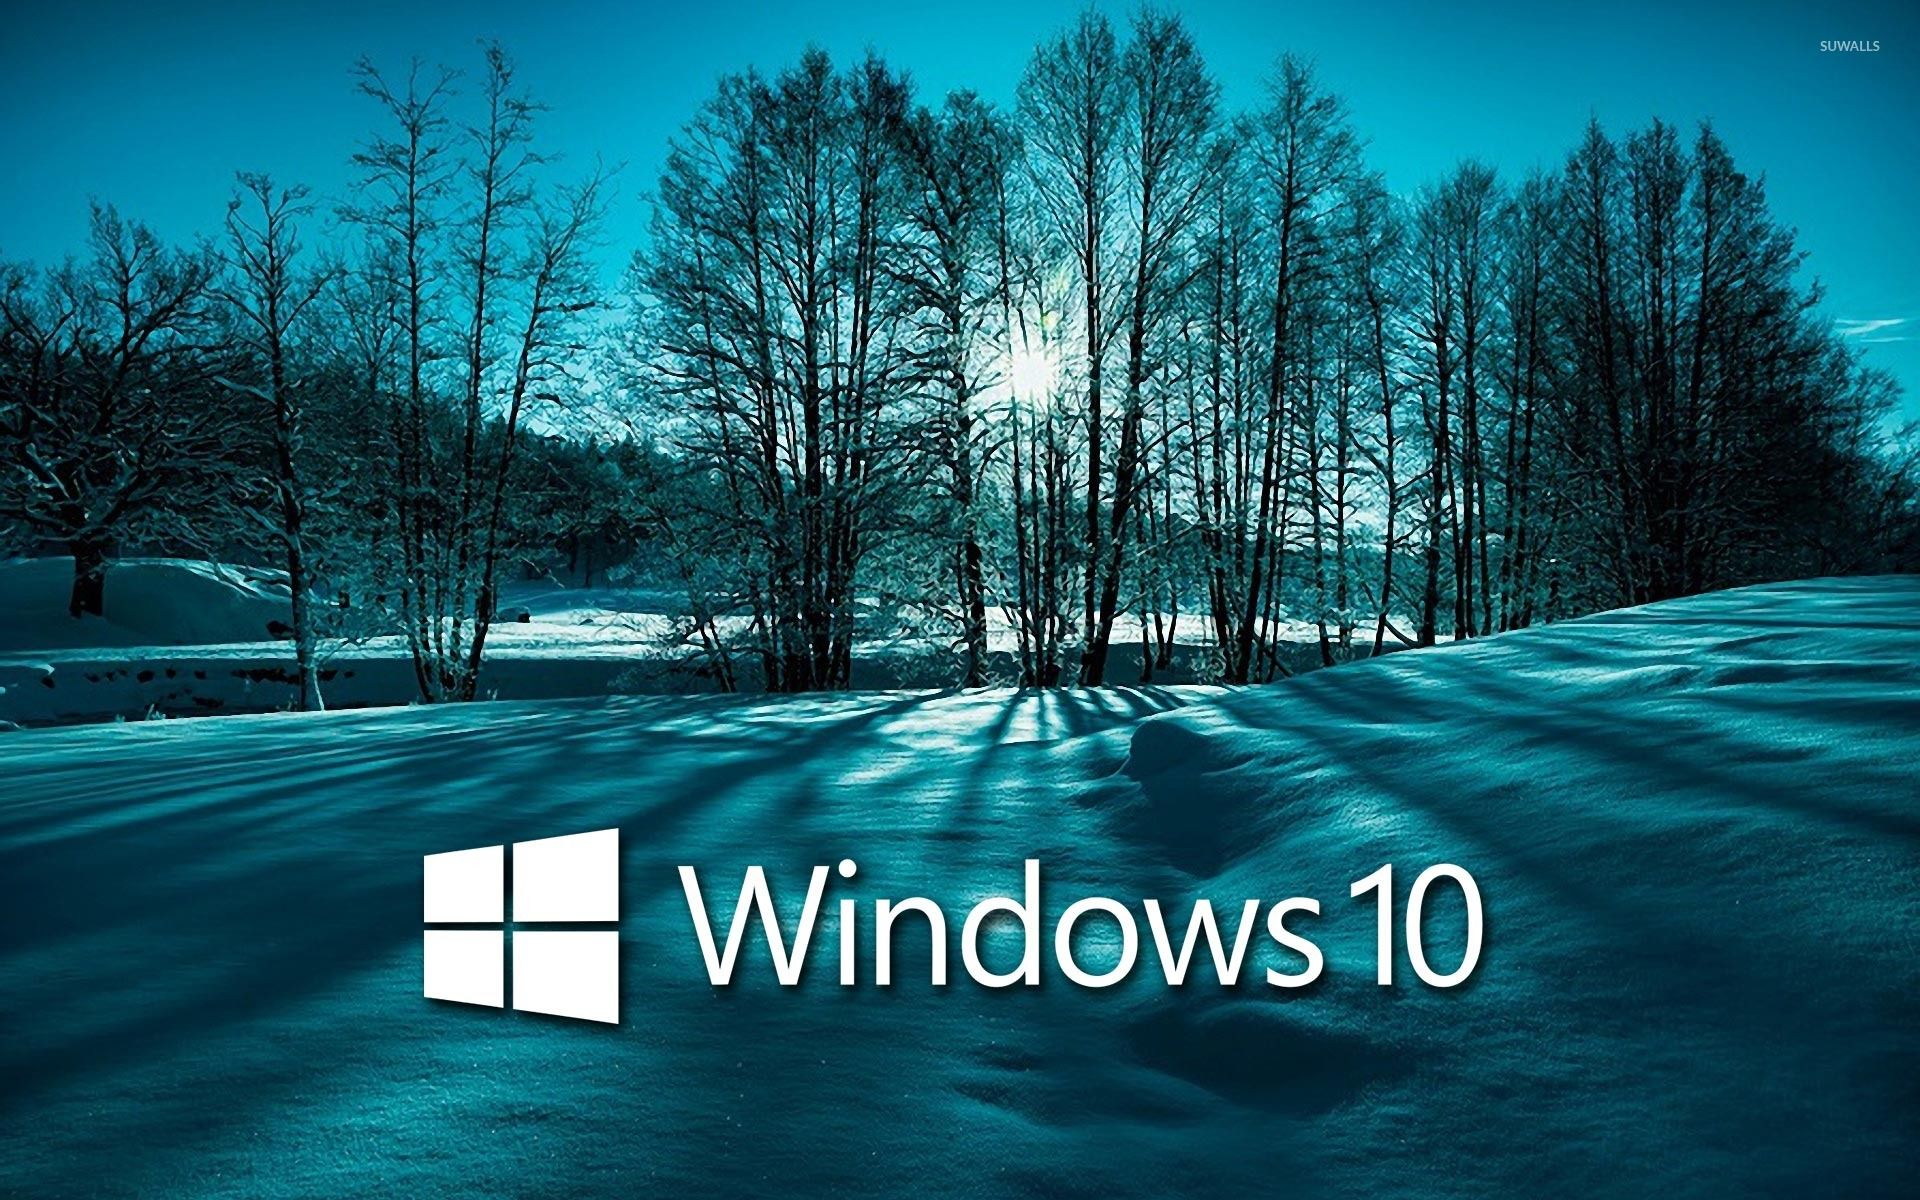 Windows 10 on snowy trees white text logo wallpaper